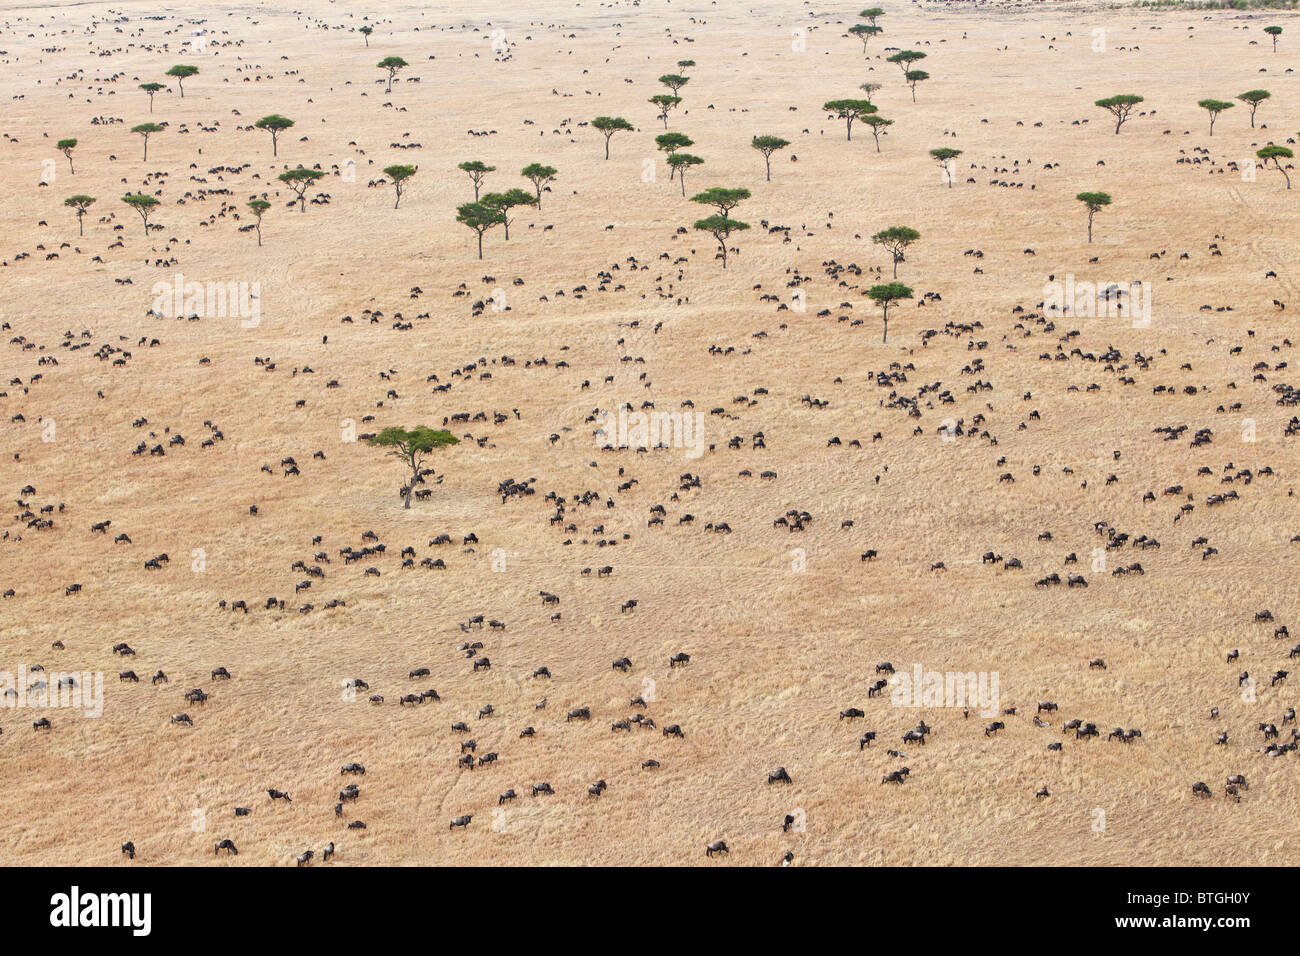 Luftaufnahme der Gnuwanderung. Bis zu 1,5 Millionen Gnus ziehen durch die Mara/Serengeti jedes Jahr. Kenia Stockfoto